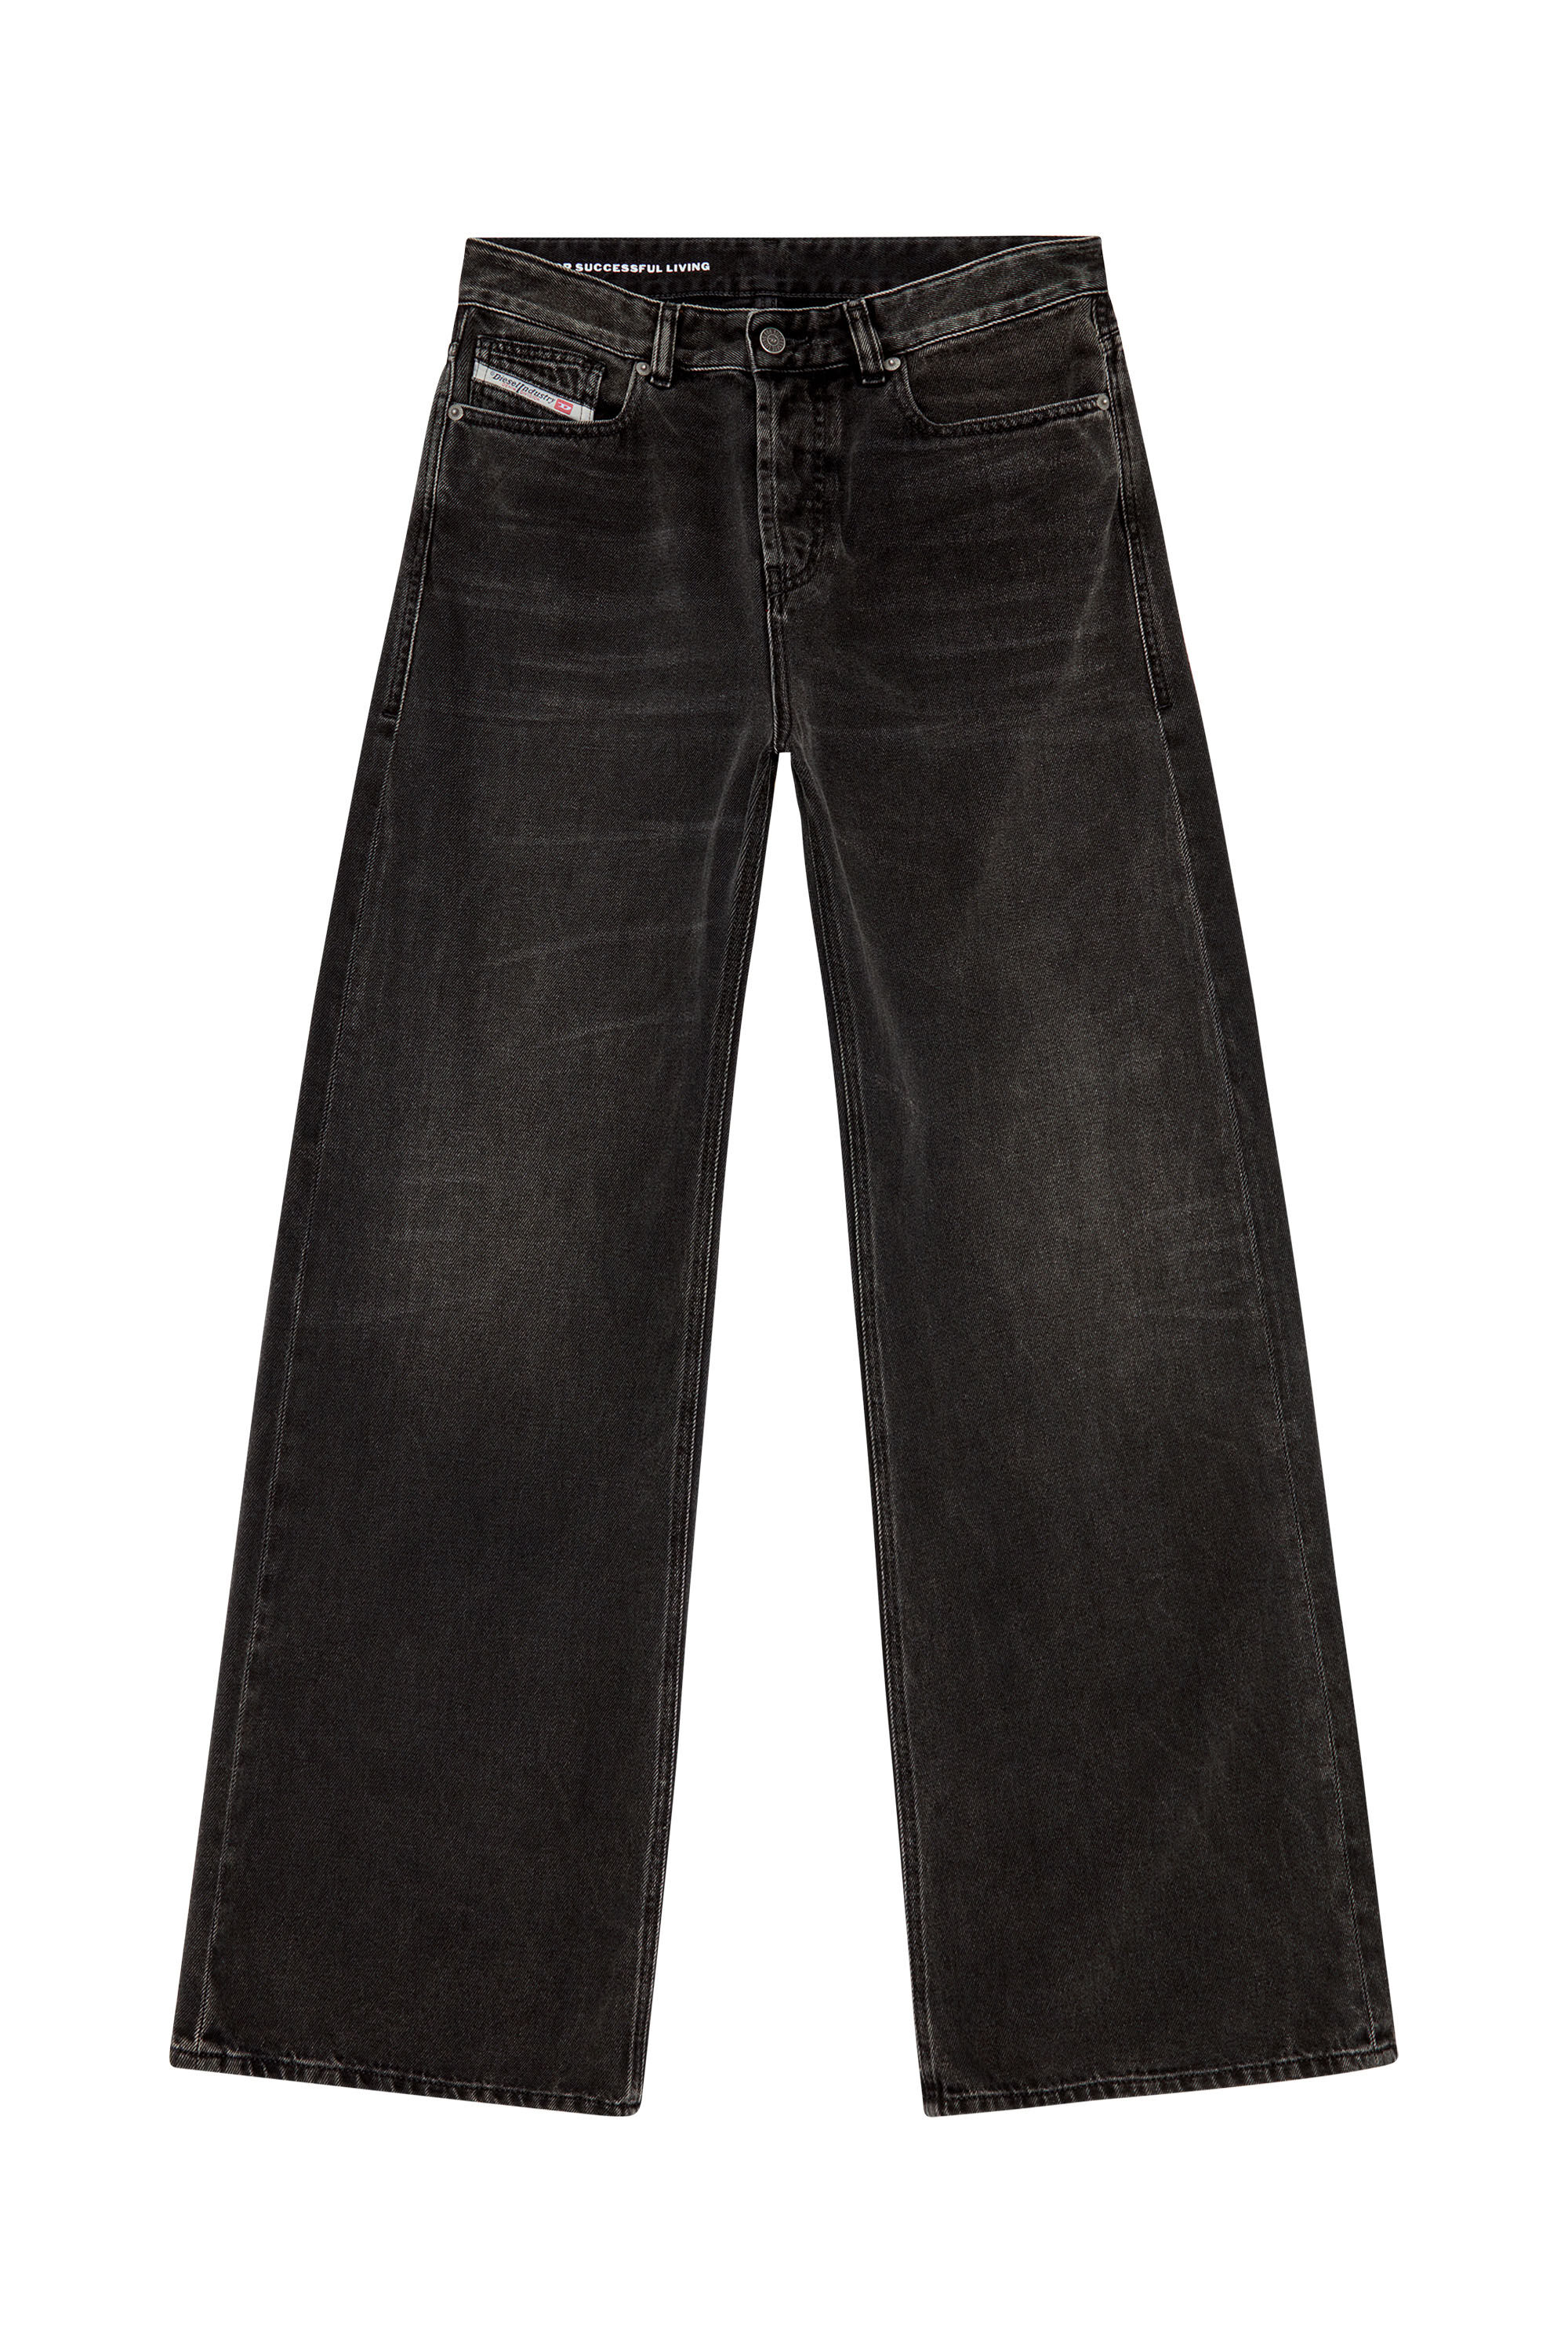 Diesel - Straight Jeans 1996 D-Sire 09J96, Black/Dark grey - Image 2